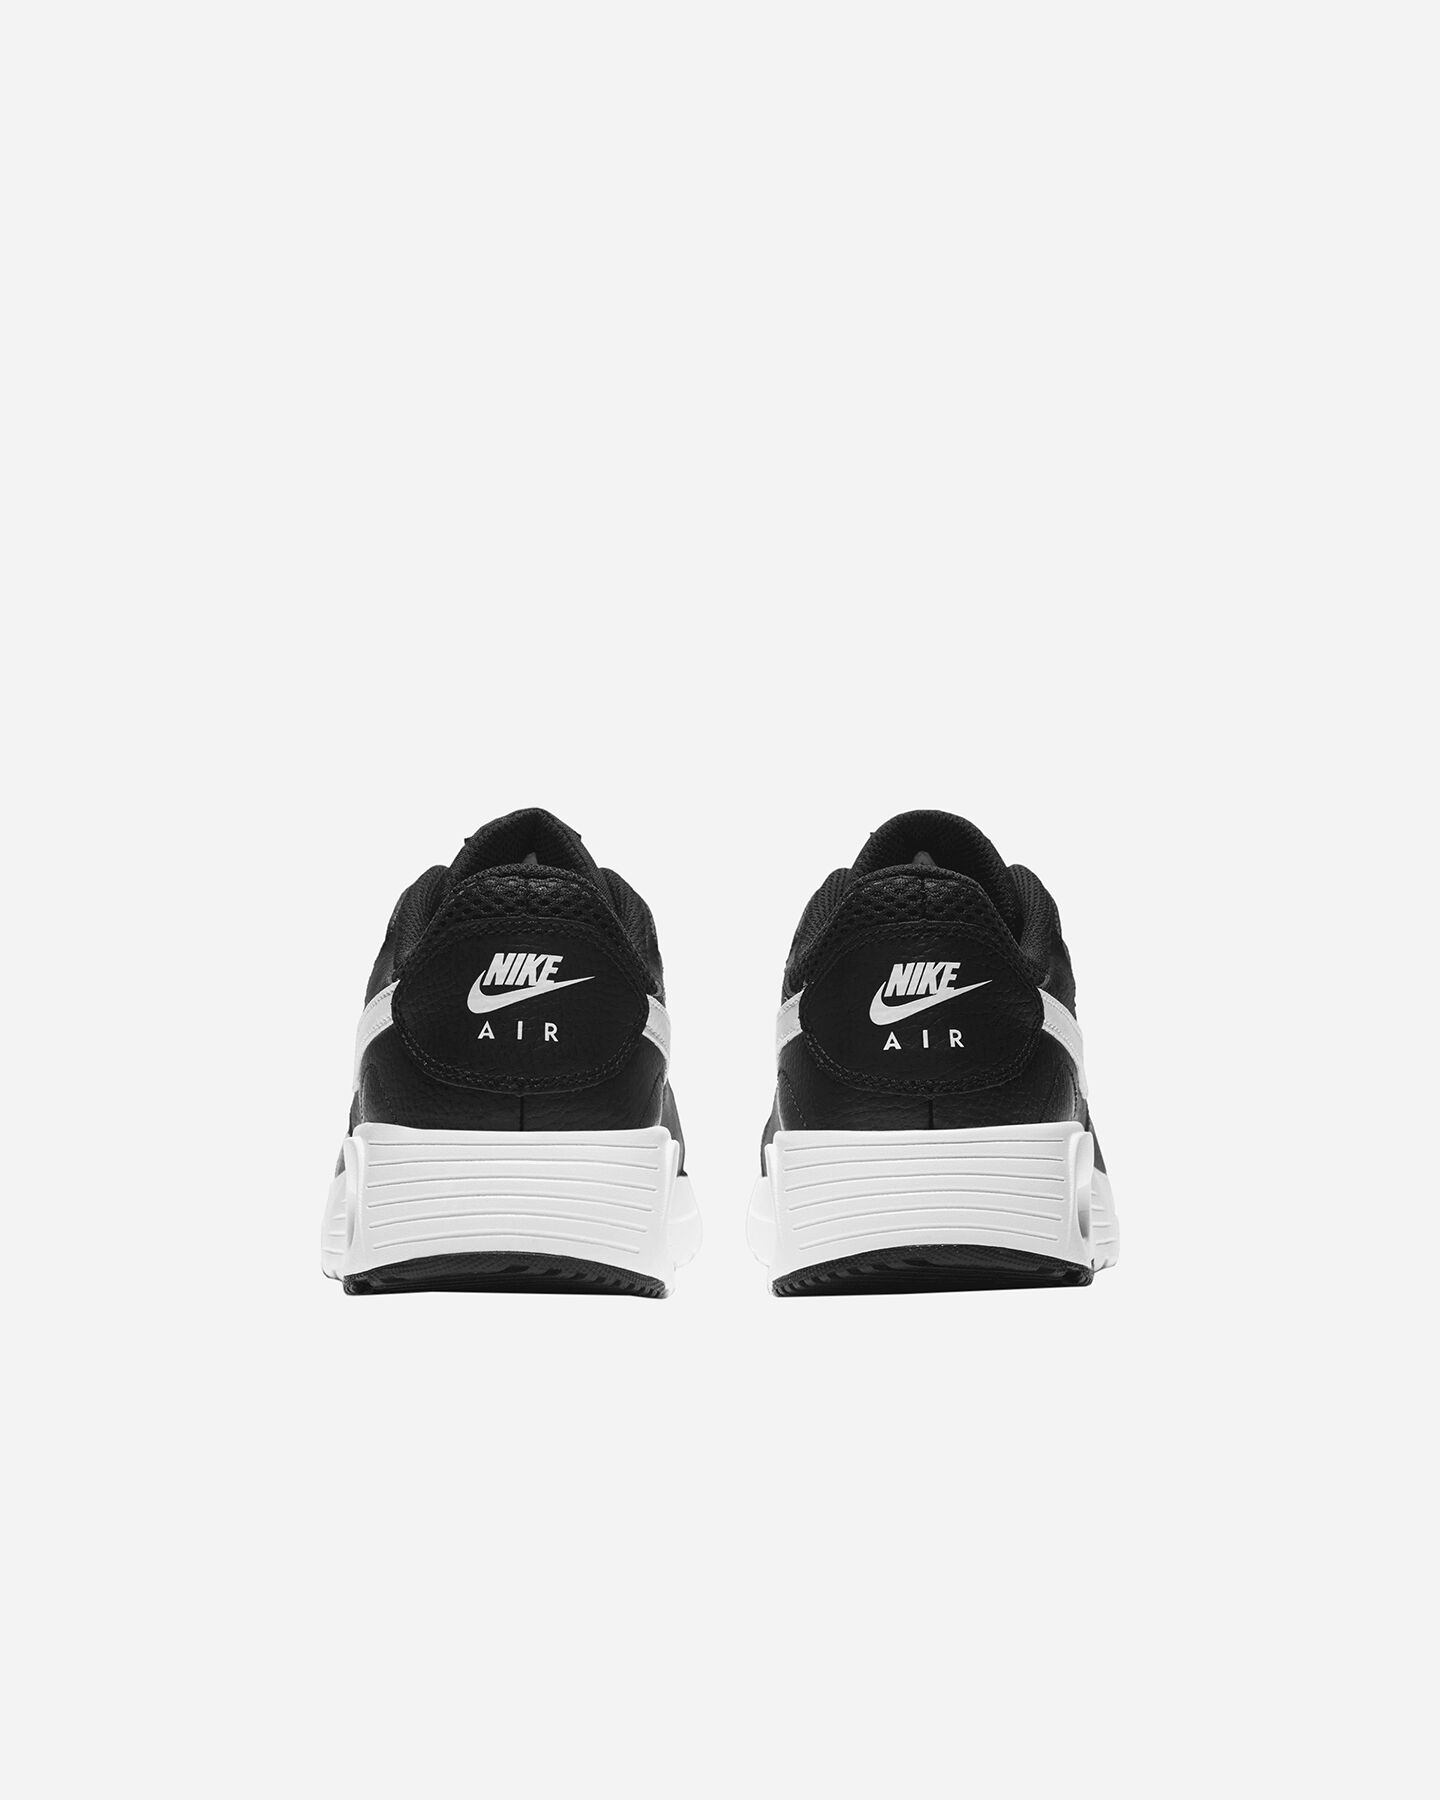  Scarpe sneakers NIKE AIR MAX SC W S5304223|001|7 scatto 4